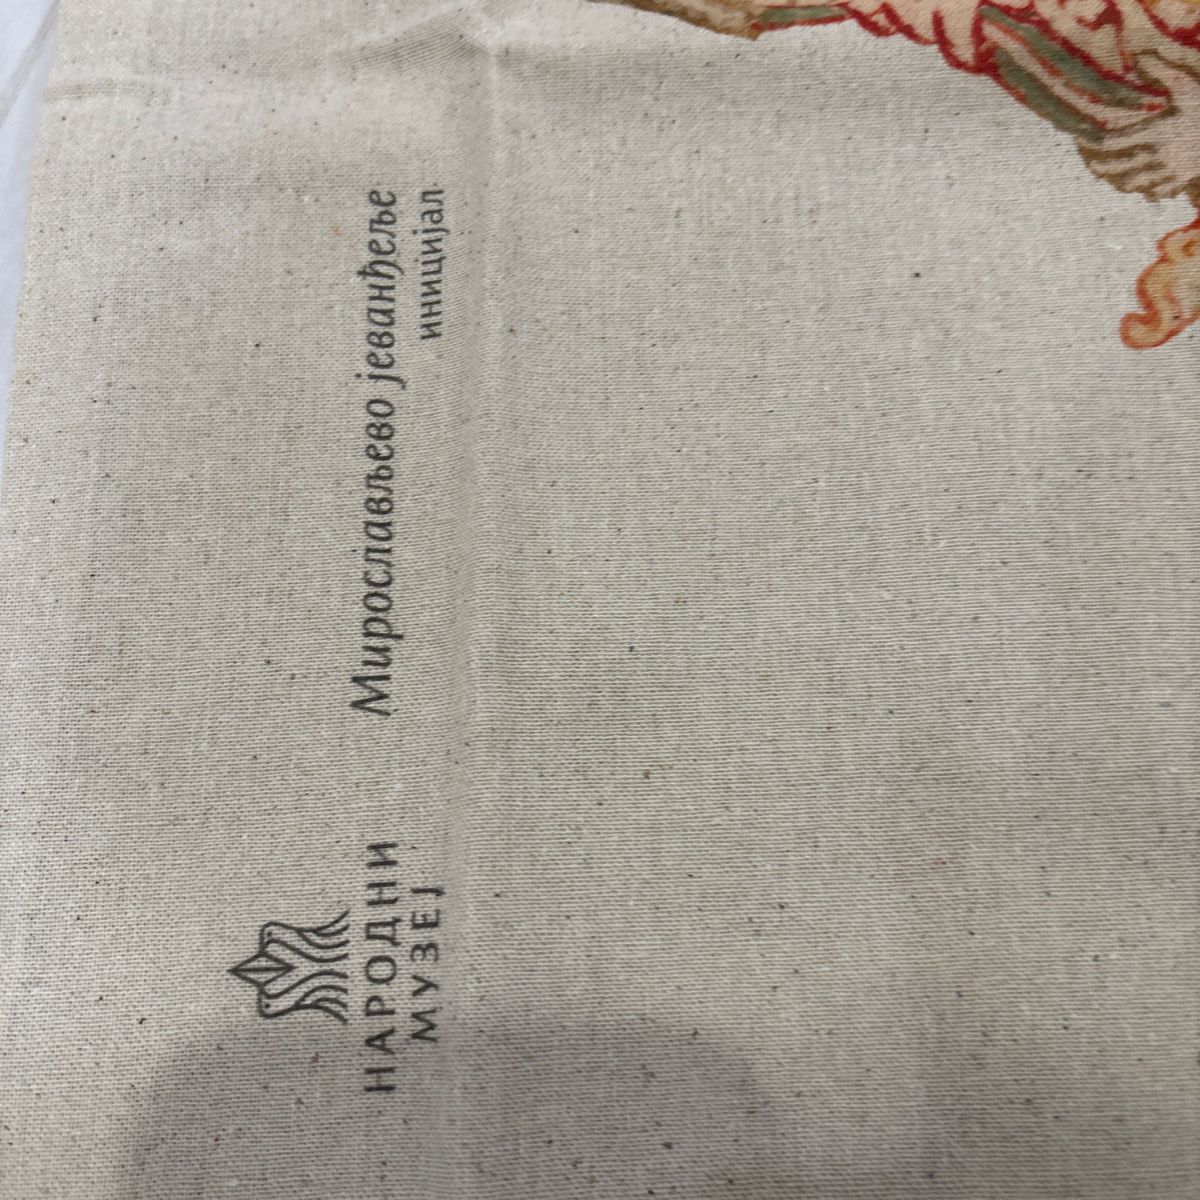 新品未使用セルビアベオグラード国立博物館オリジナルバッグ☆ミロスラフの福音書